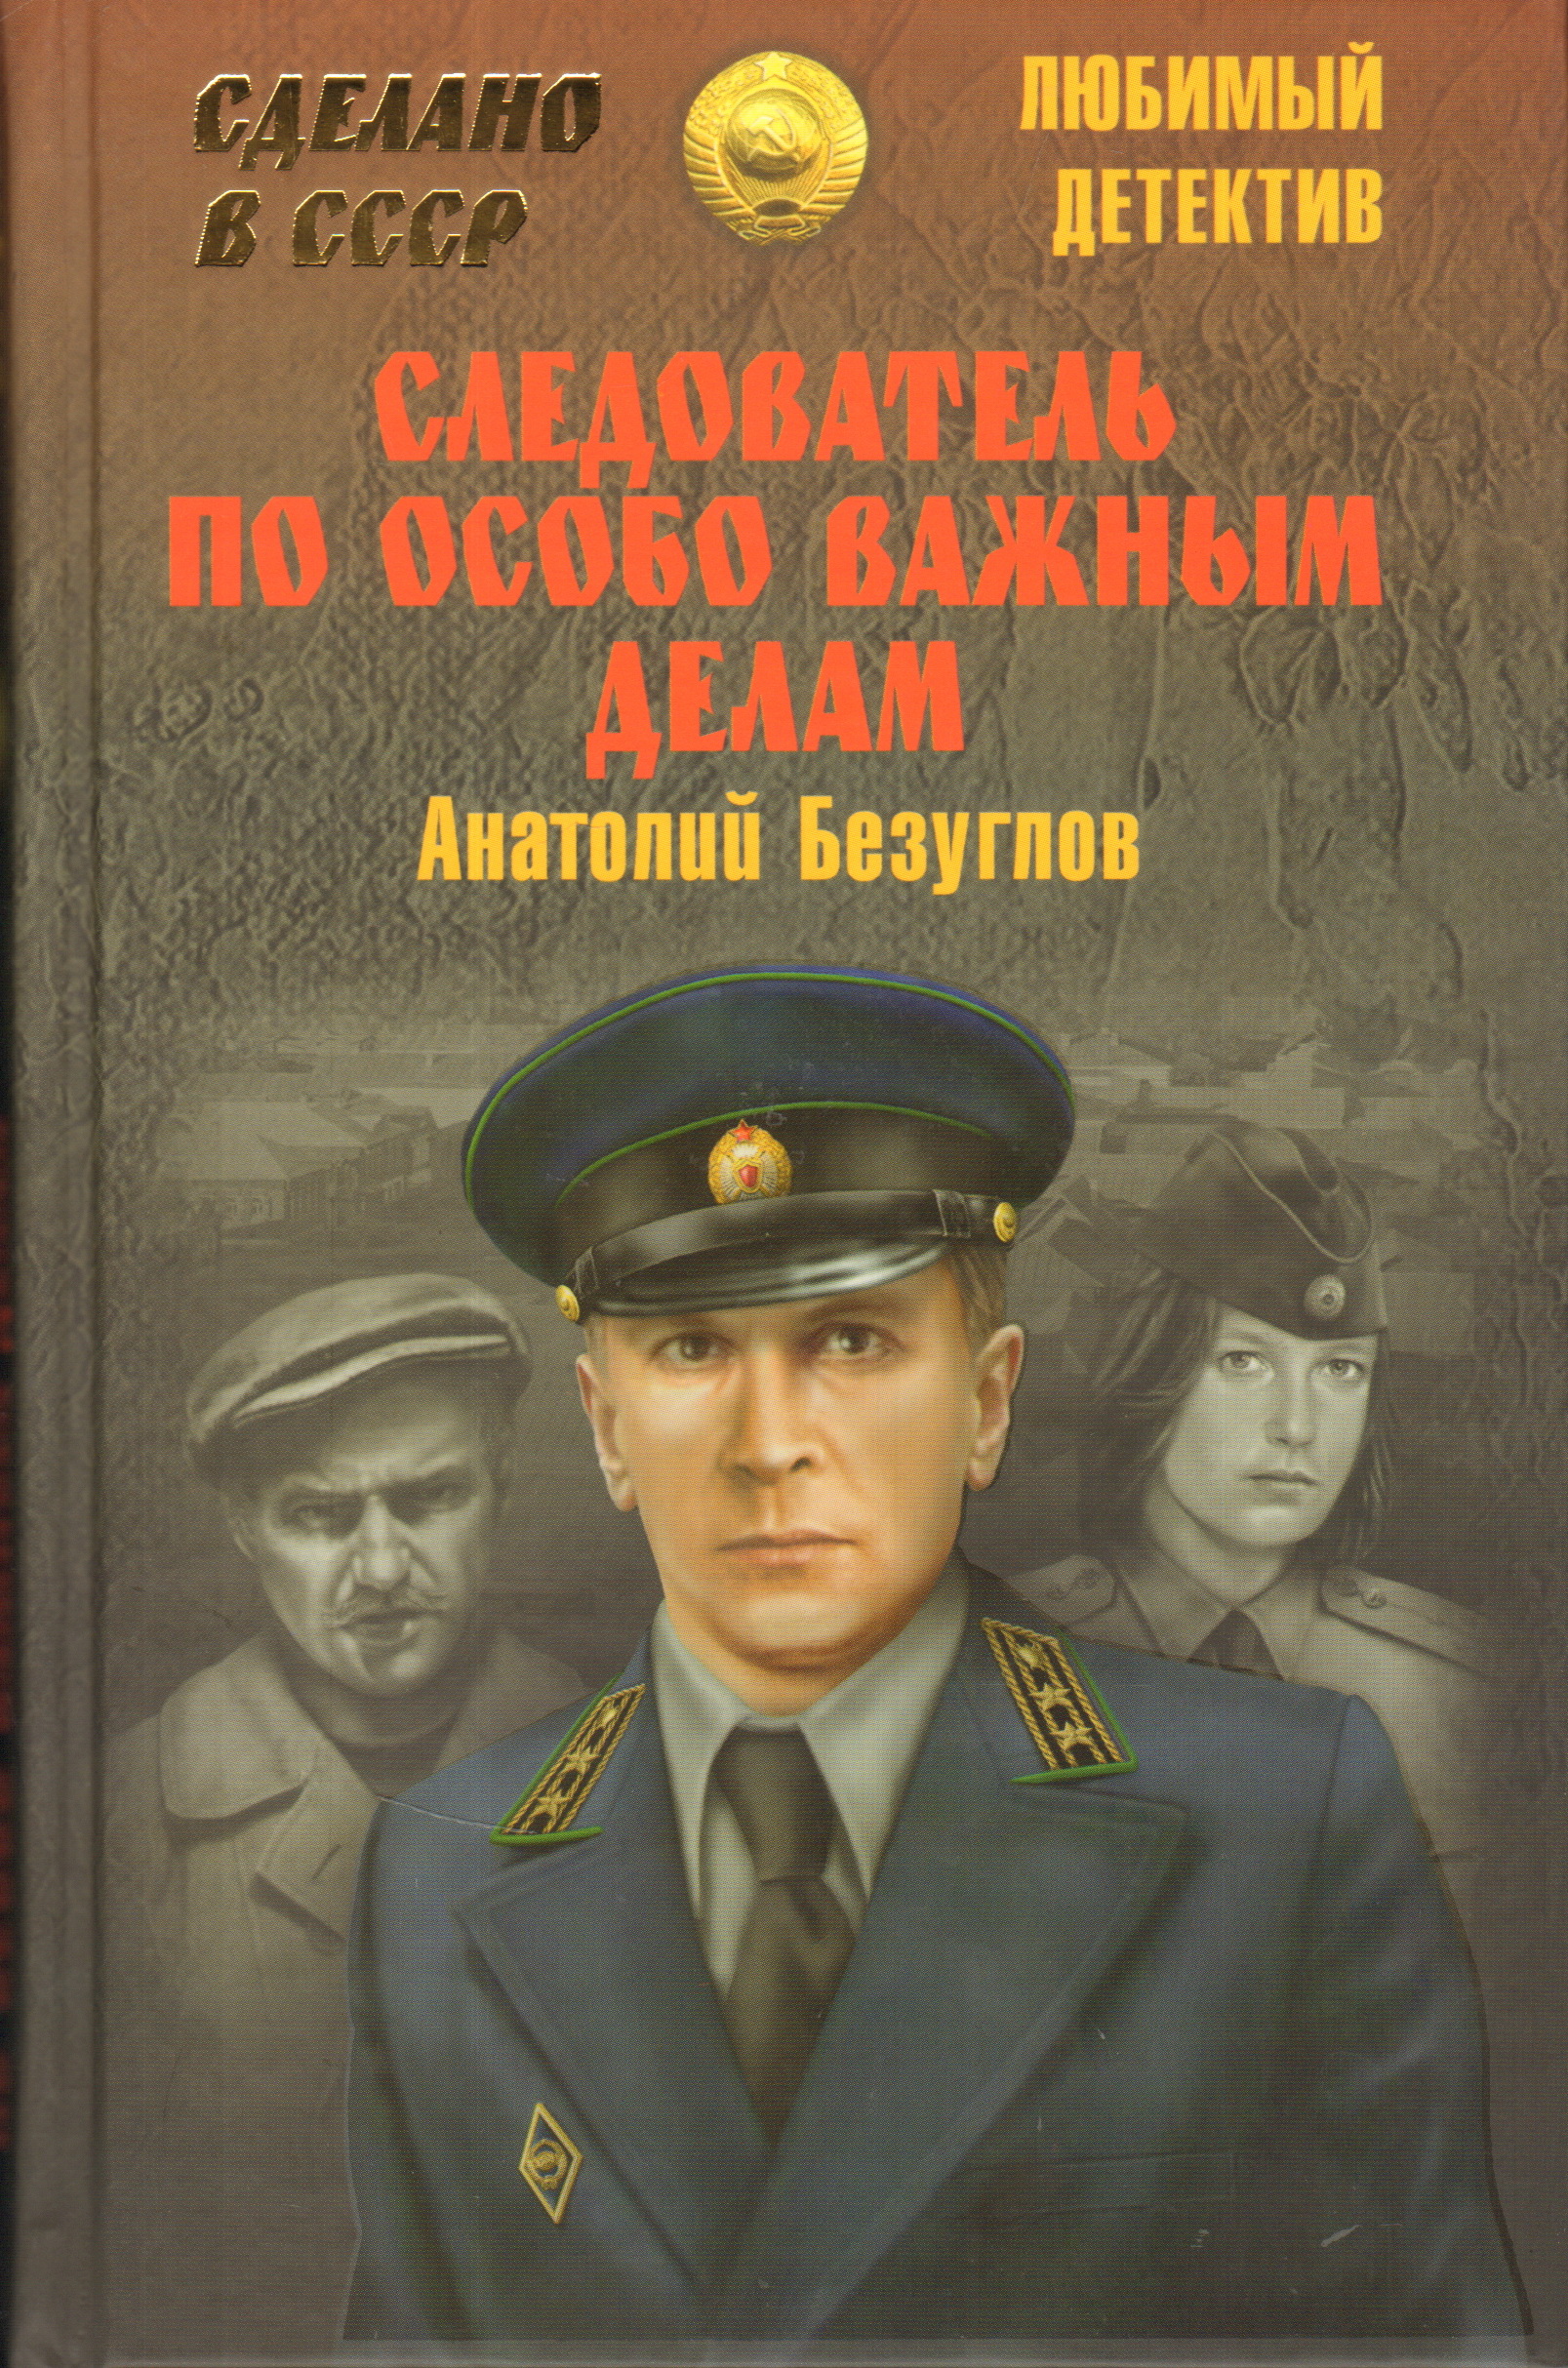 Аудиокнига слушать военный детектив. Советские детективы книги. Детективы про милицию.